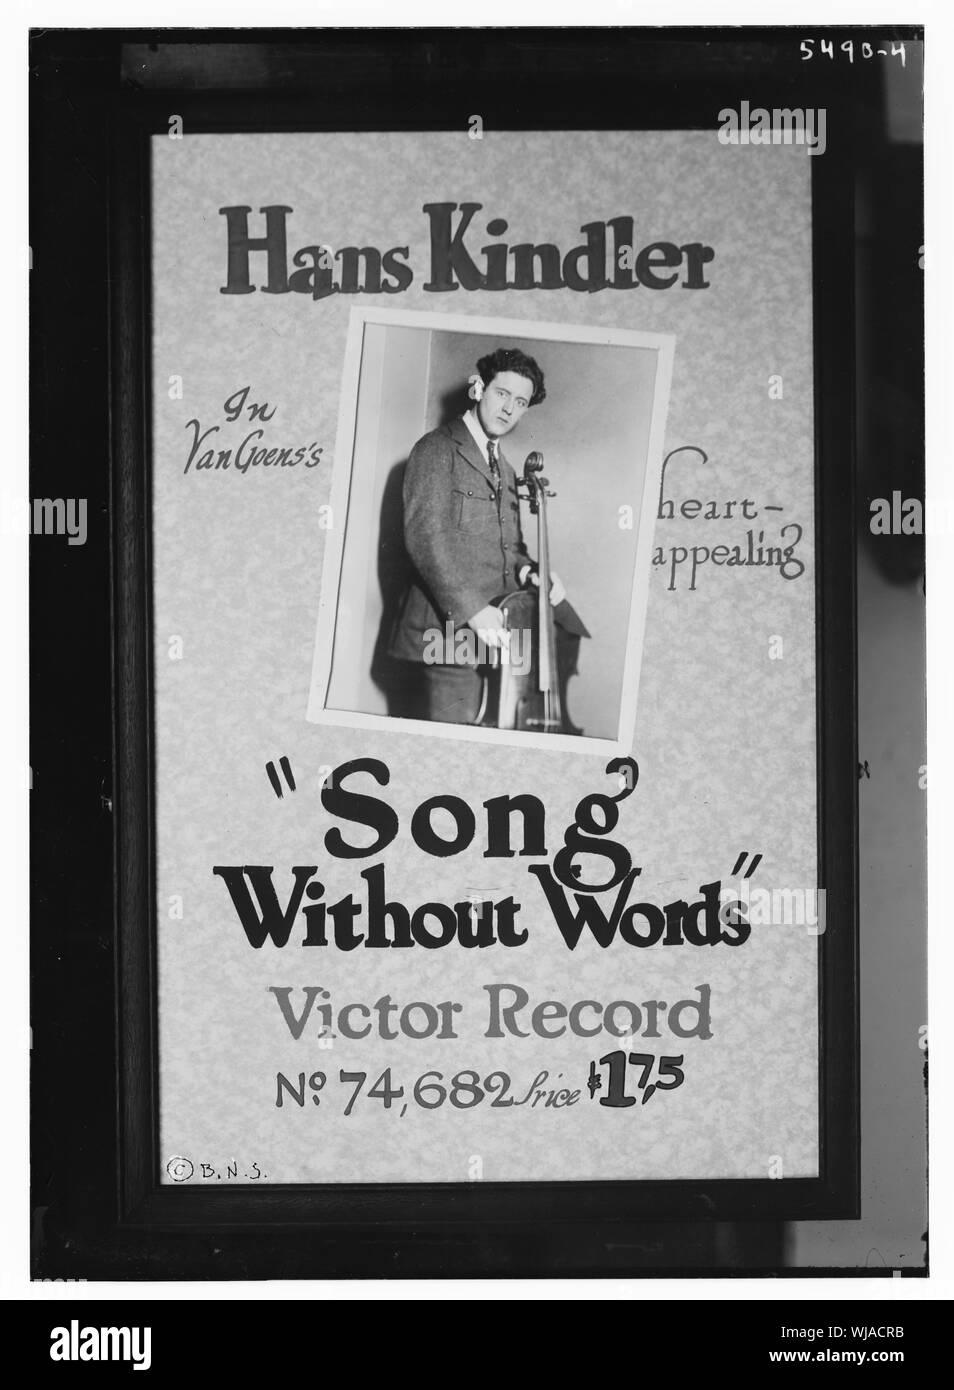 Hans Kindler in Van Goen il cuore e accattivante brano senza parole, Victor Record Foto Stock